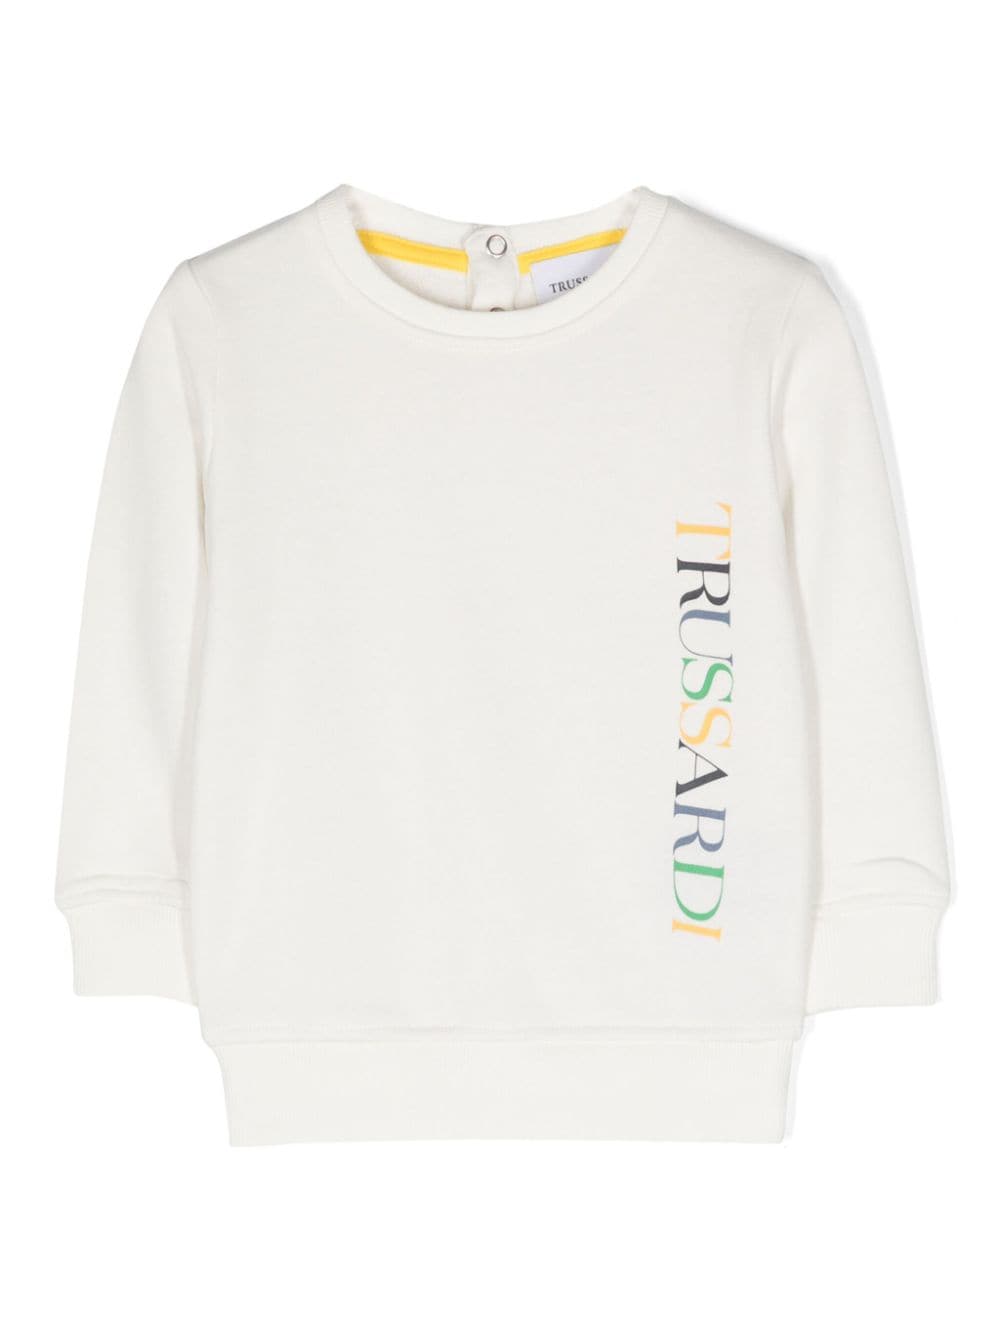 White sweatshirt for newborns with logo